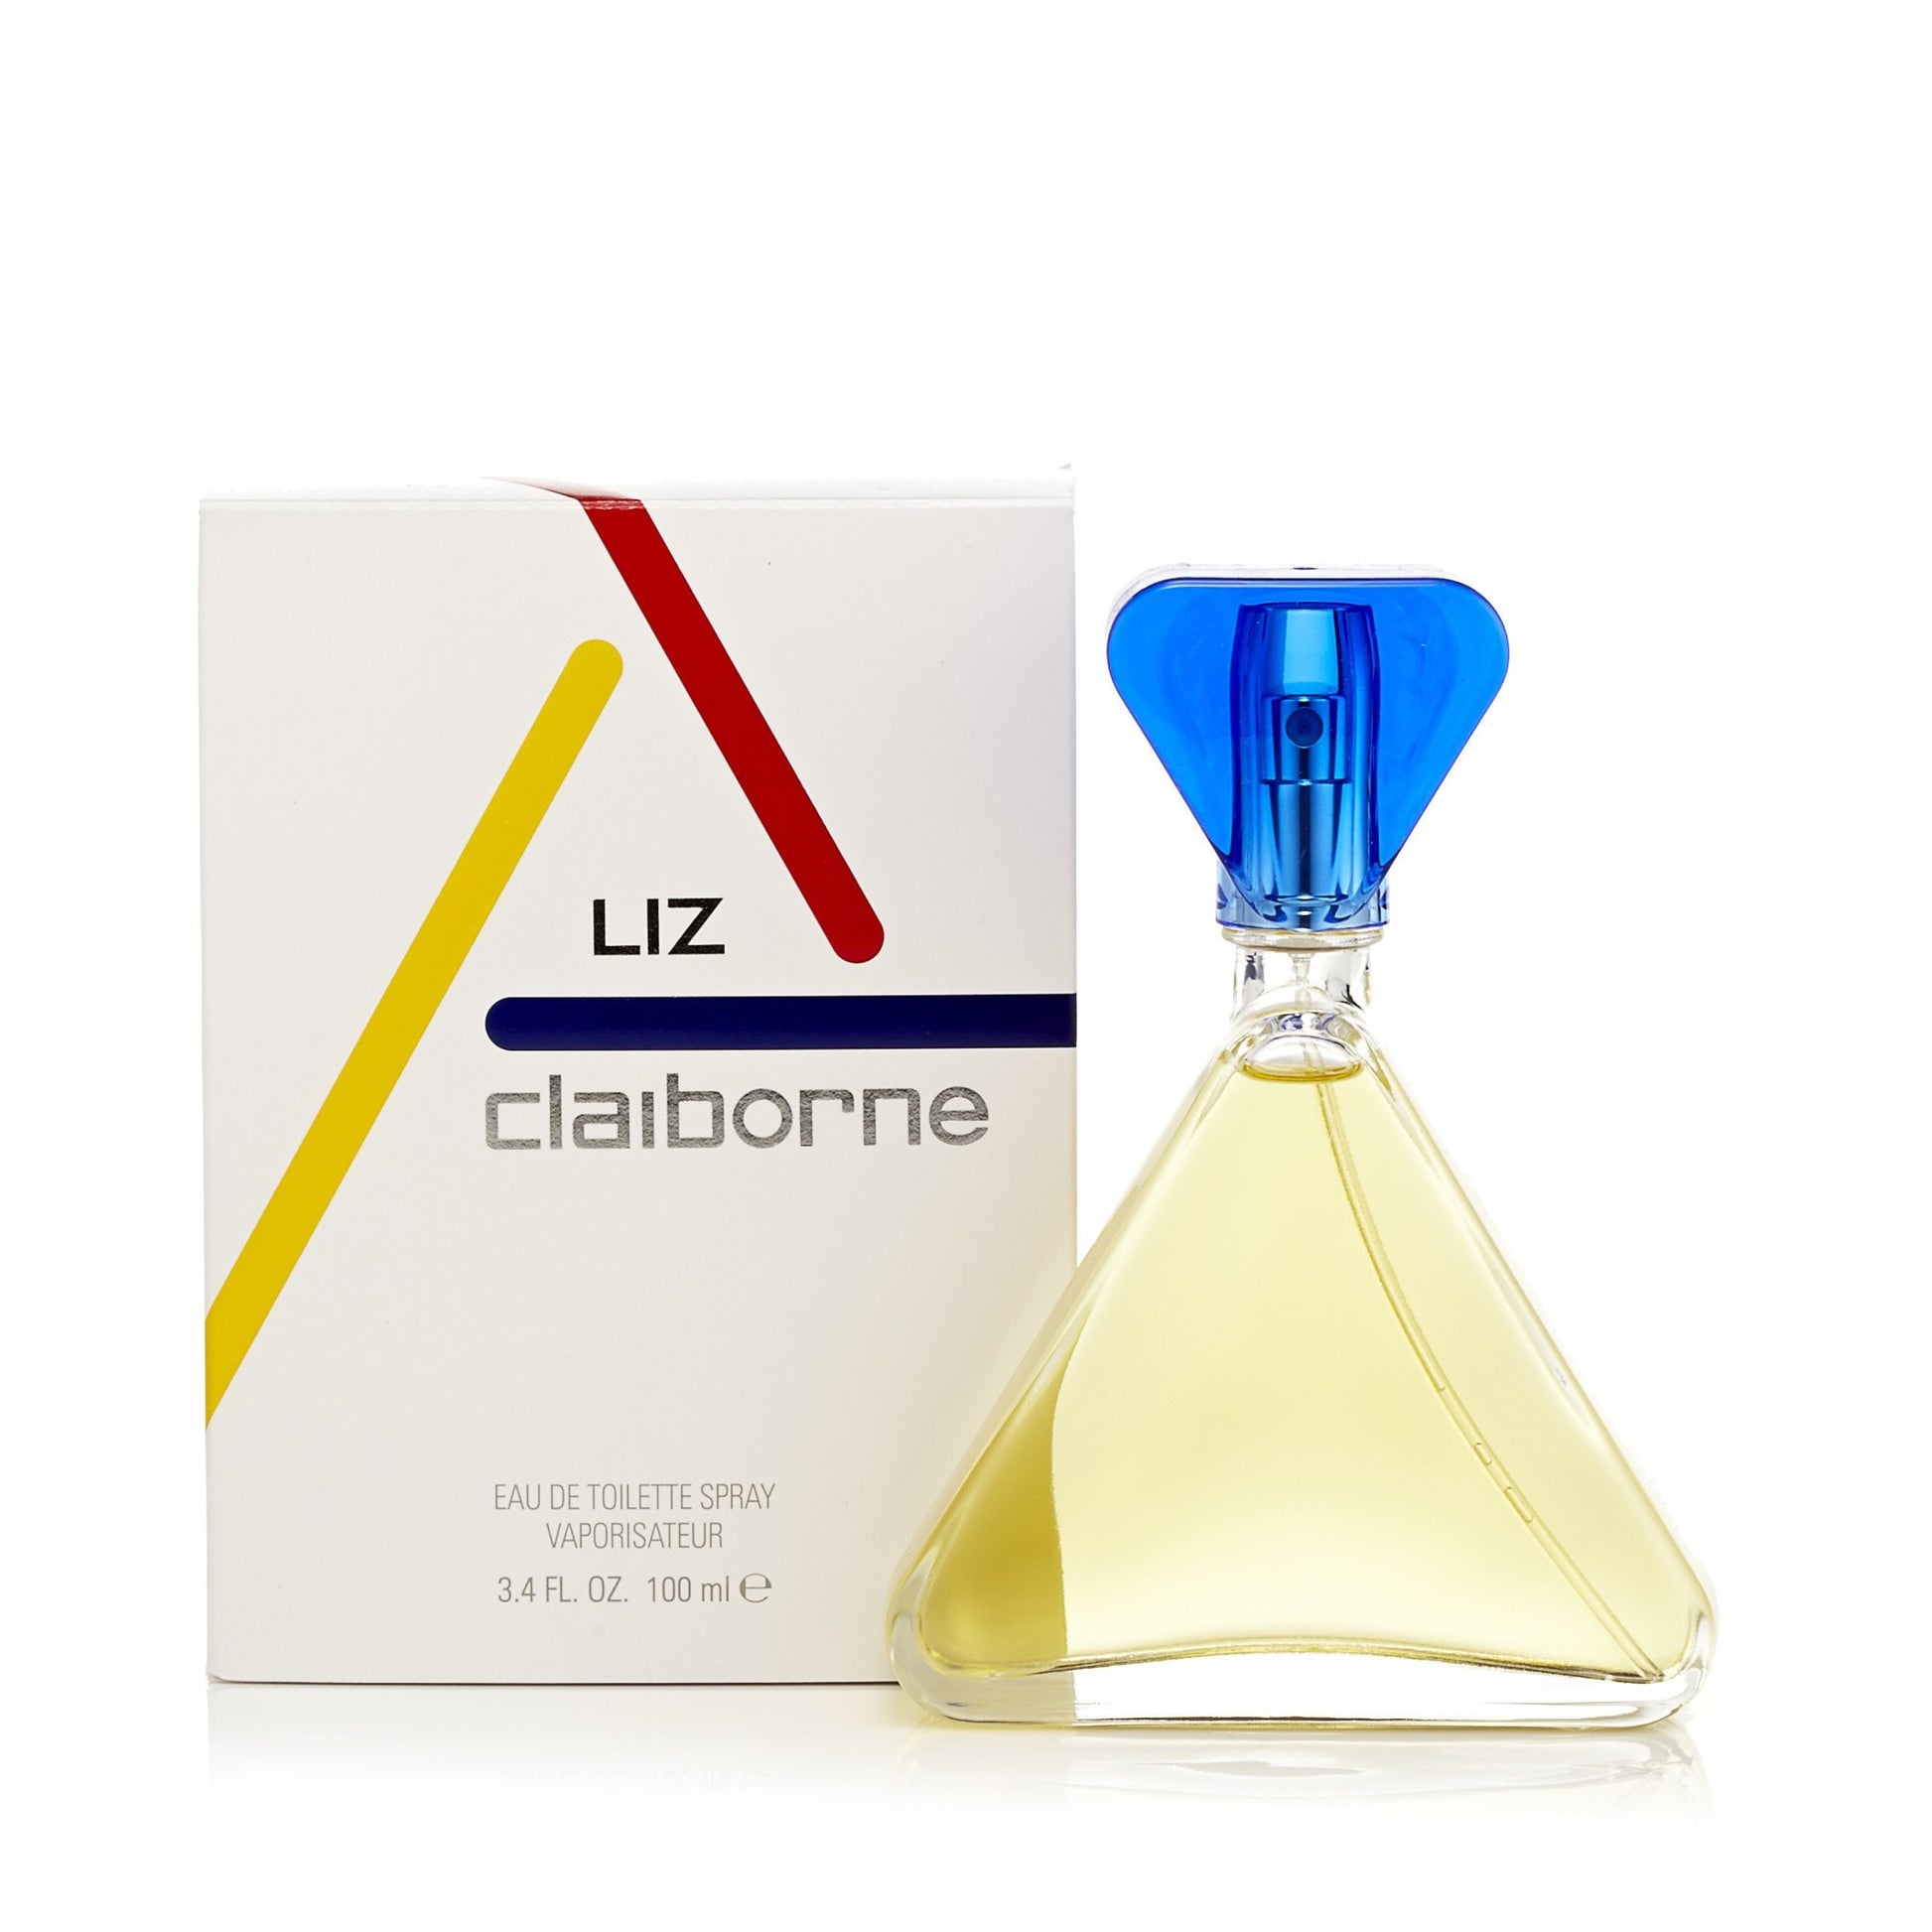 Liz Claiborne Eau de Toilette Spray for Women by Claiborne 3.4 oz. Click to open in modal